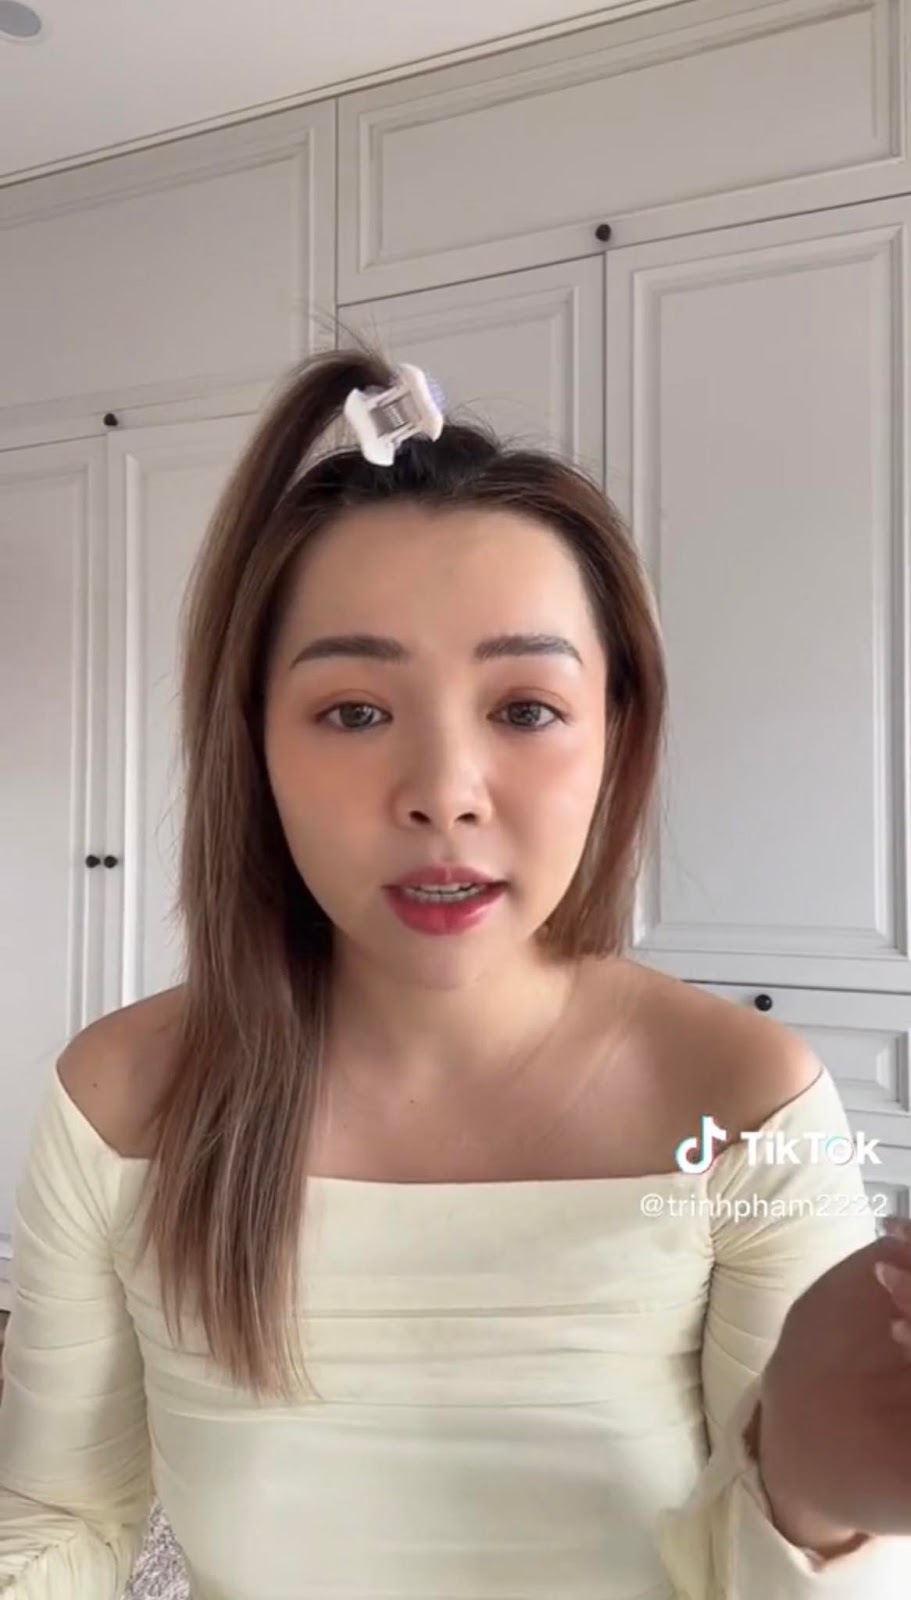 Một Youtuber chỉ trích việc người nổi tiếng bị “ngáo quyền lực”, netizen đồng loạt nghĩ đến Bà Nhân - ảnh 5